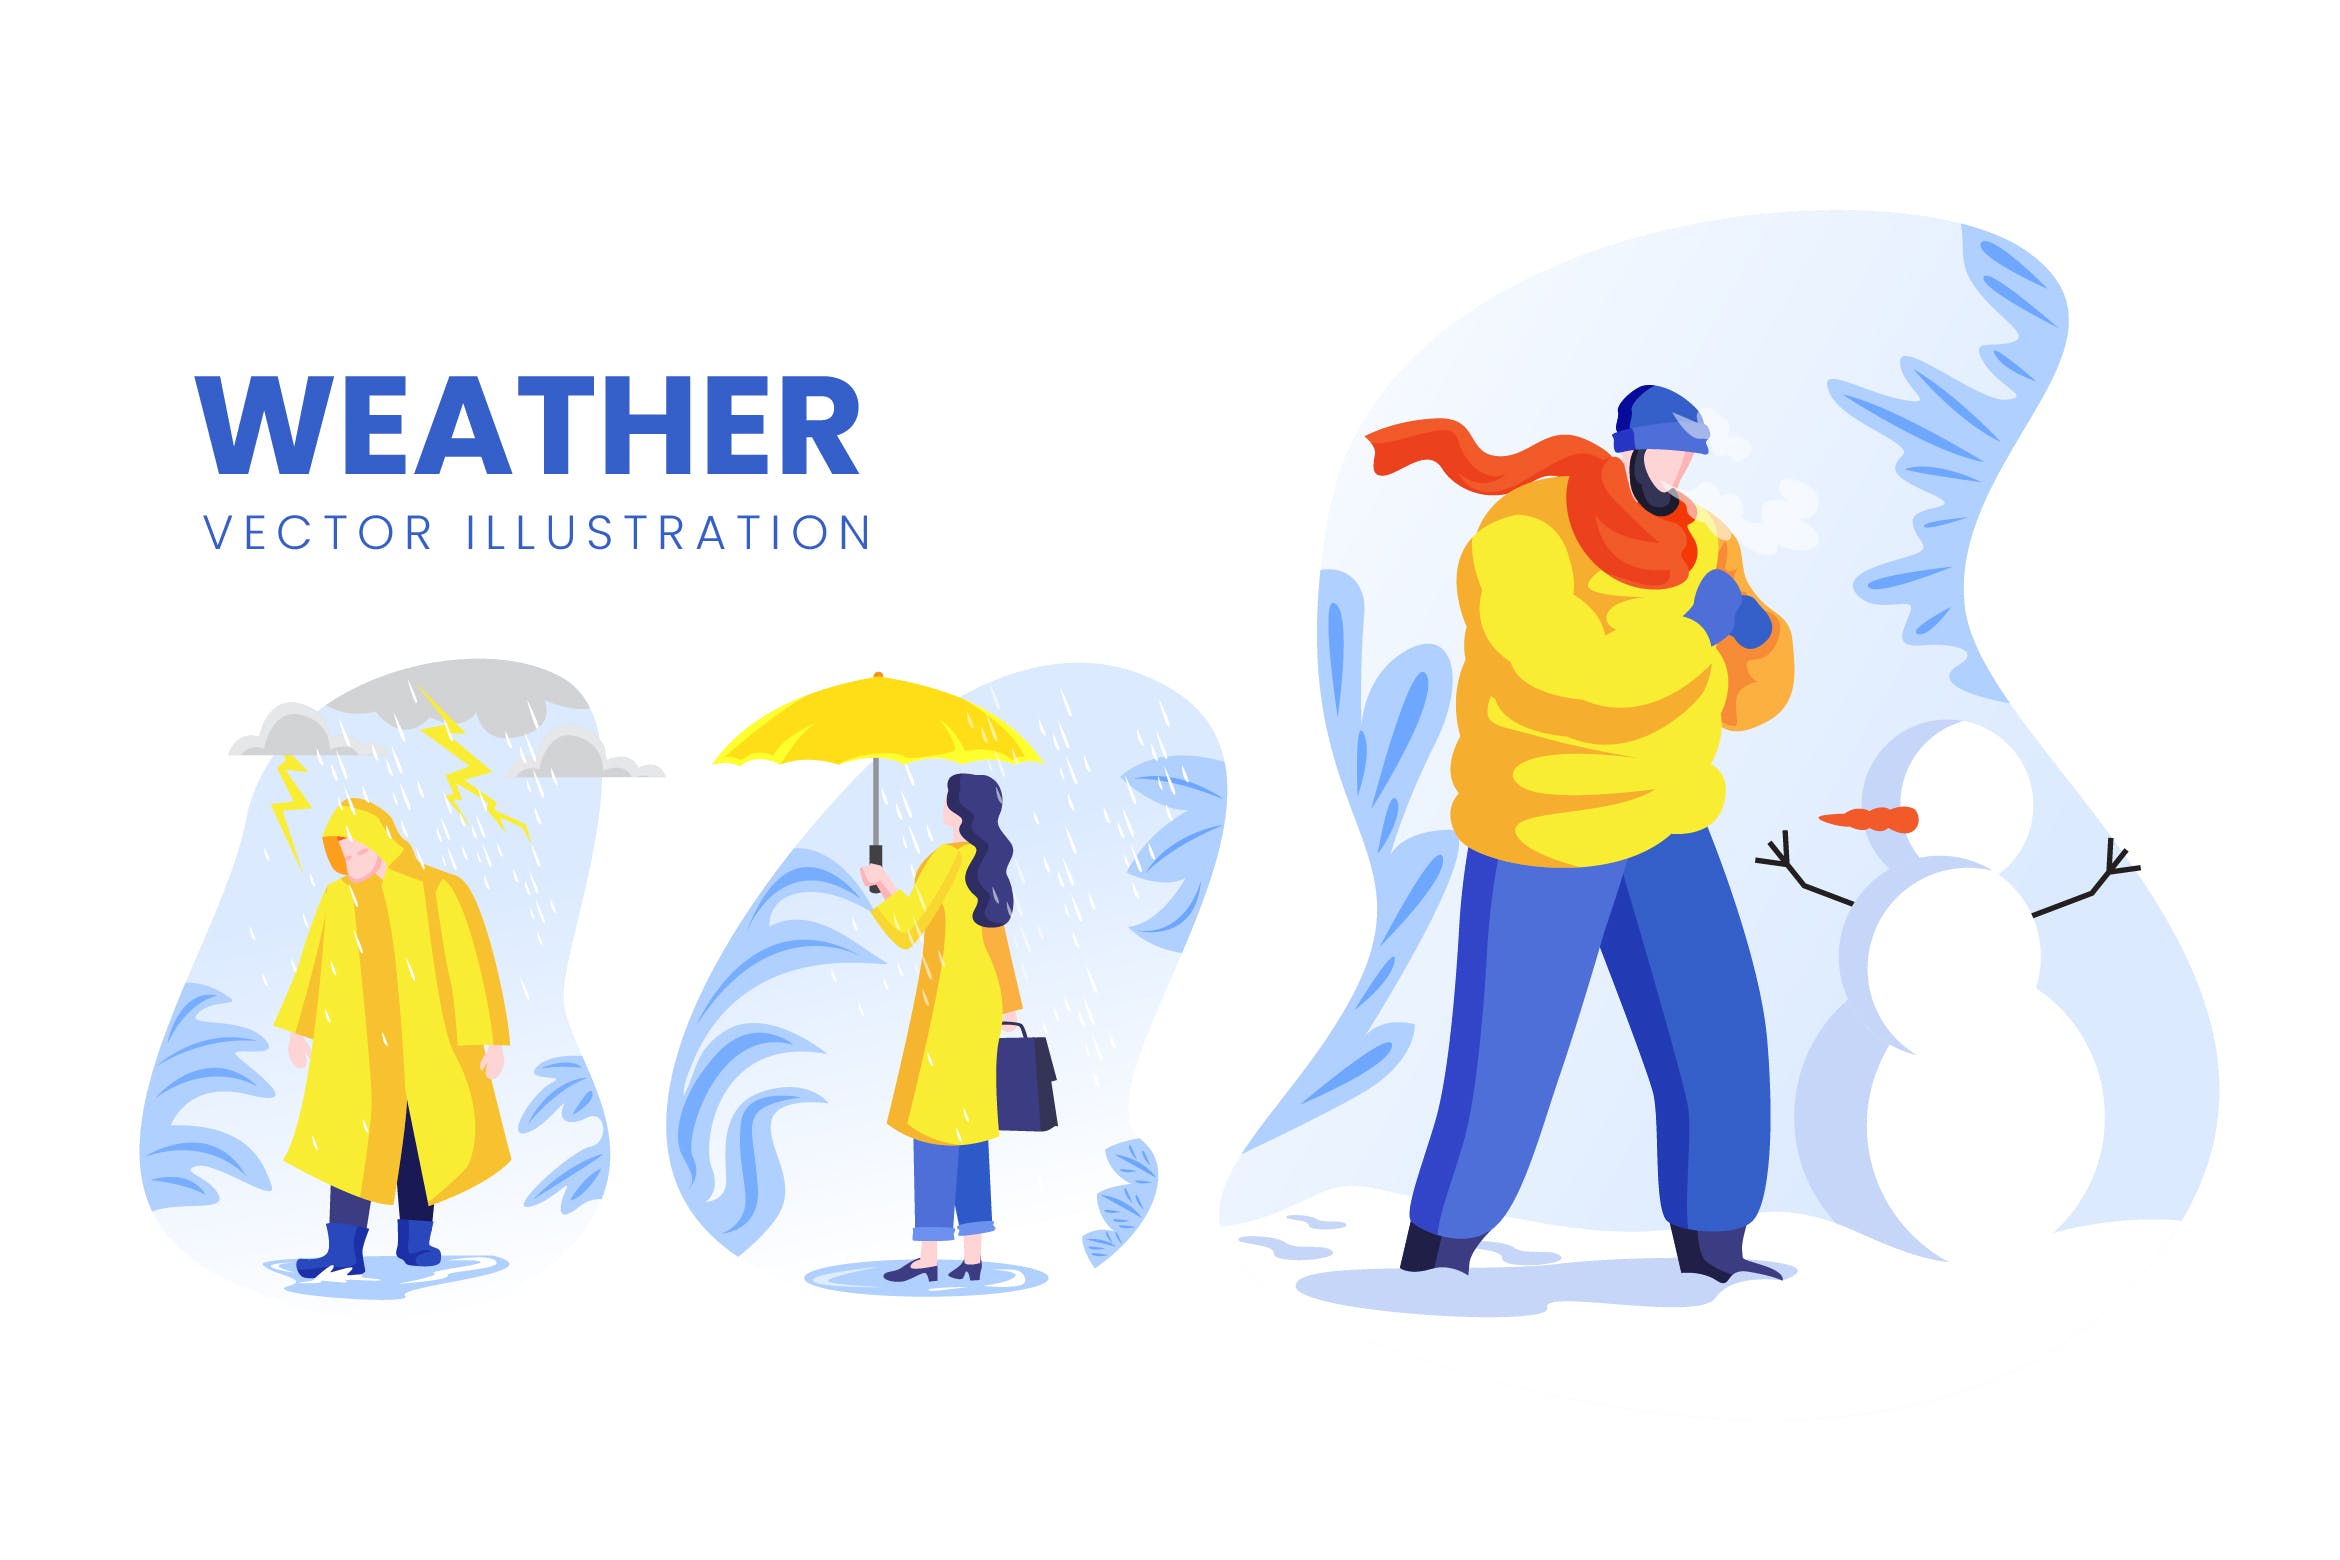 天气预报主题人物形象蚂蚁素材精选手绘插画矢量素材 Weather Condition Vector Character Set插图